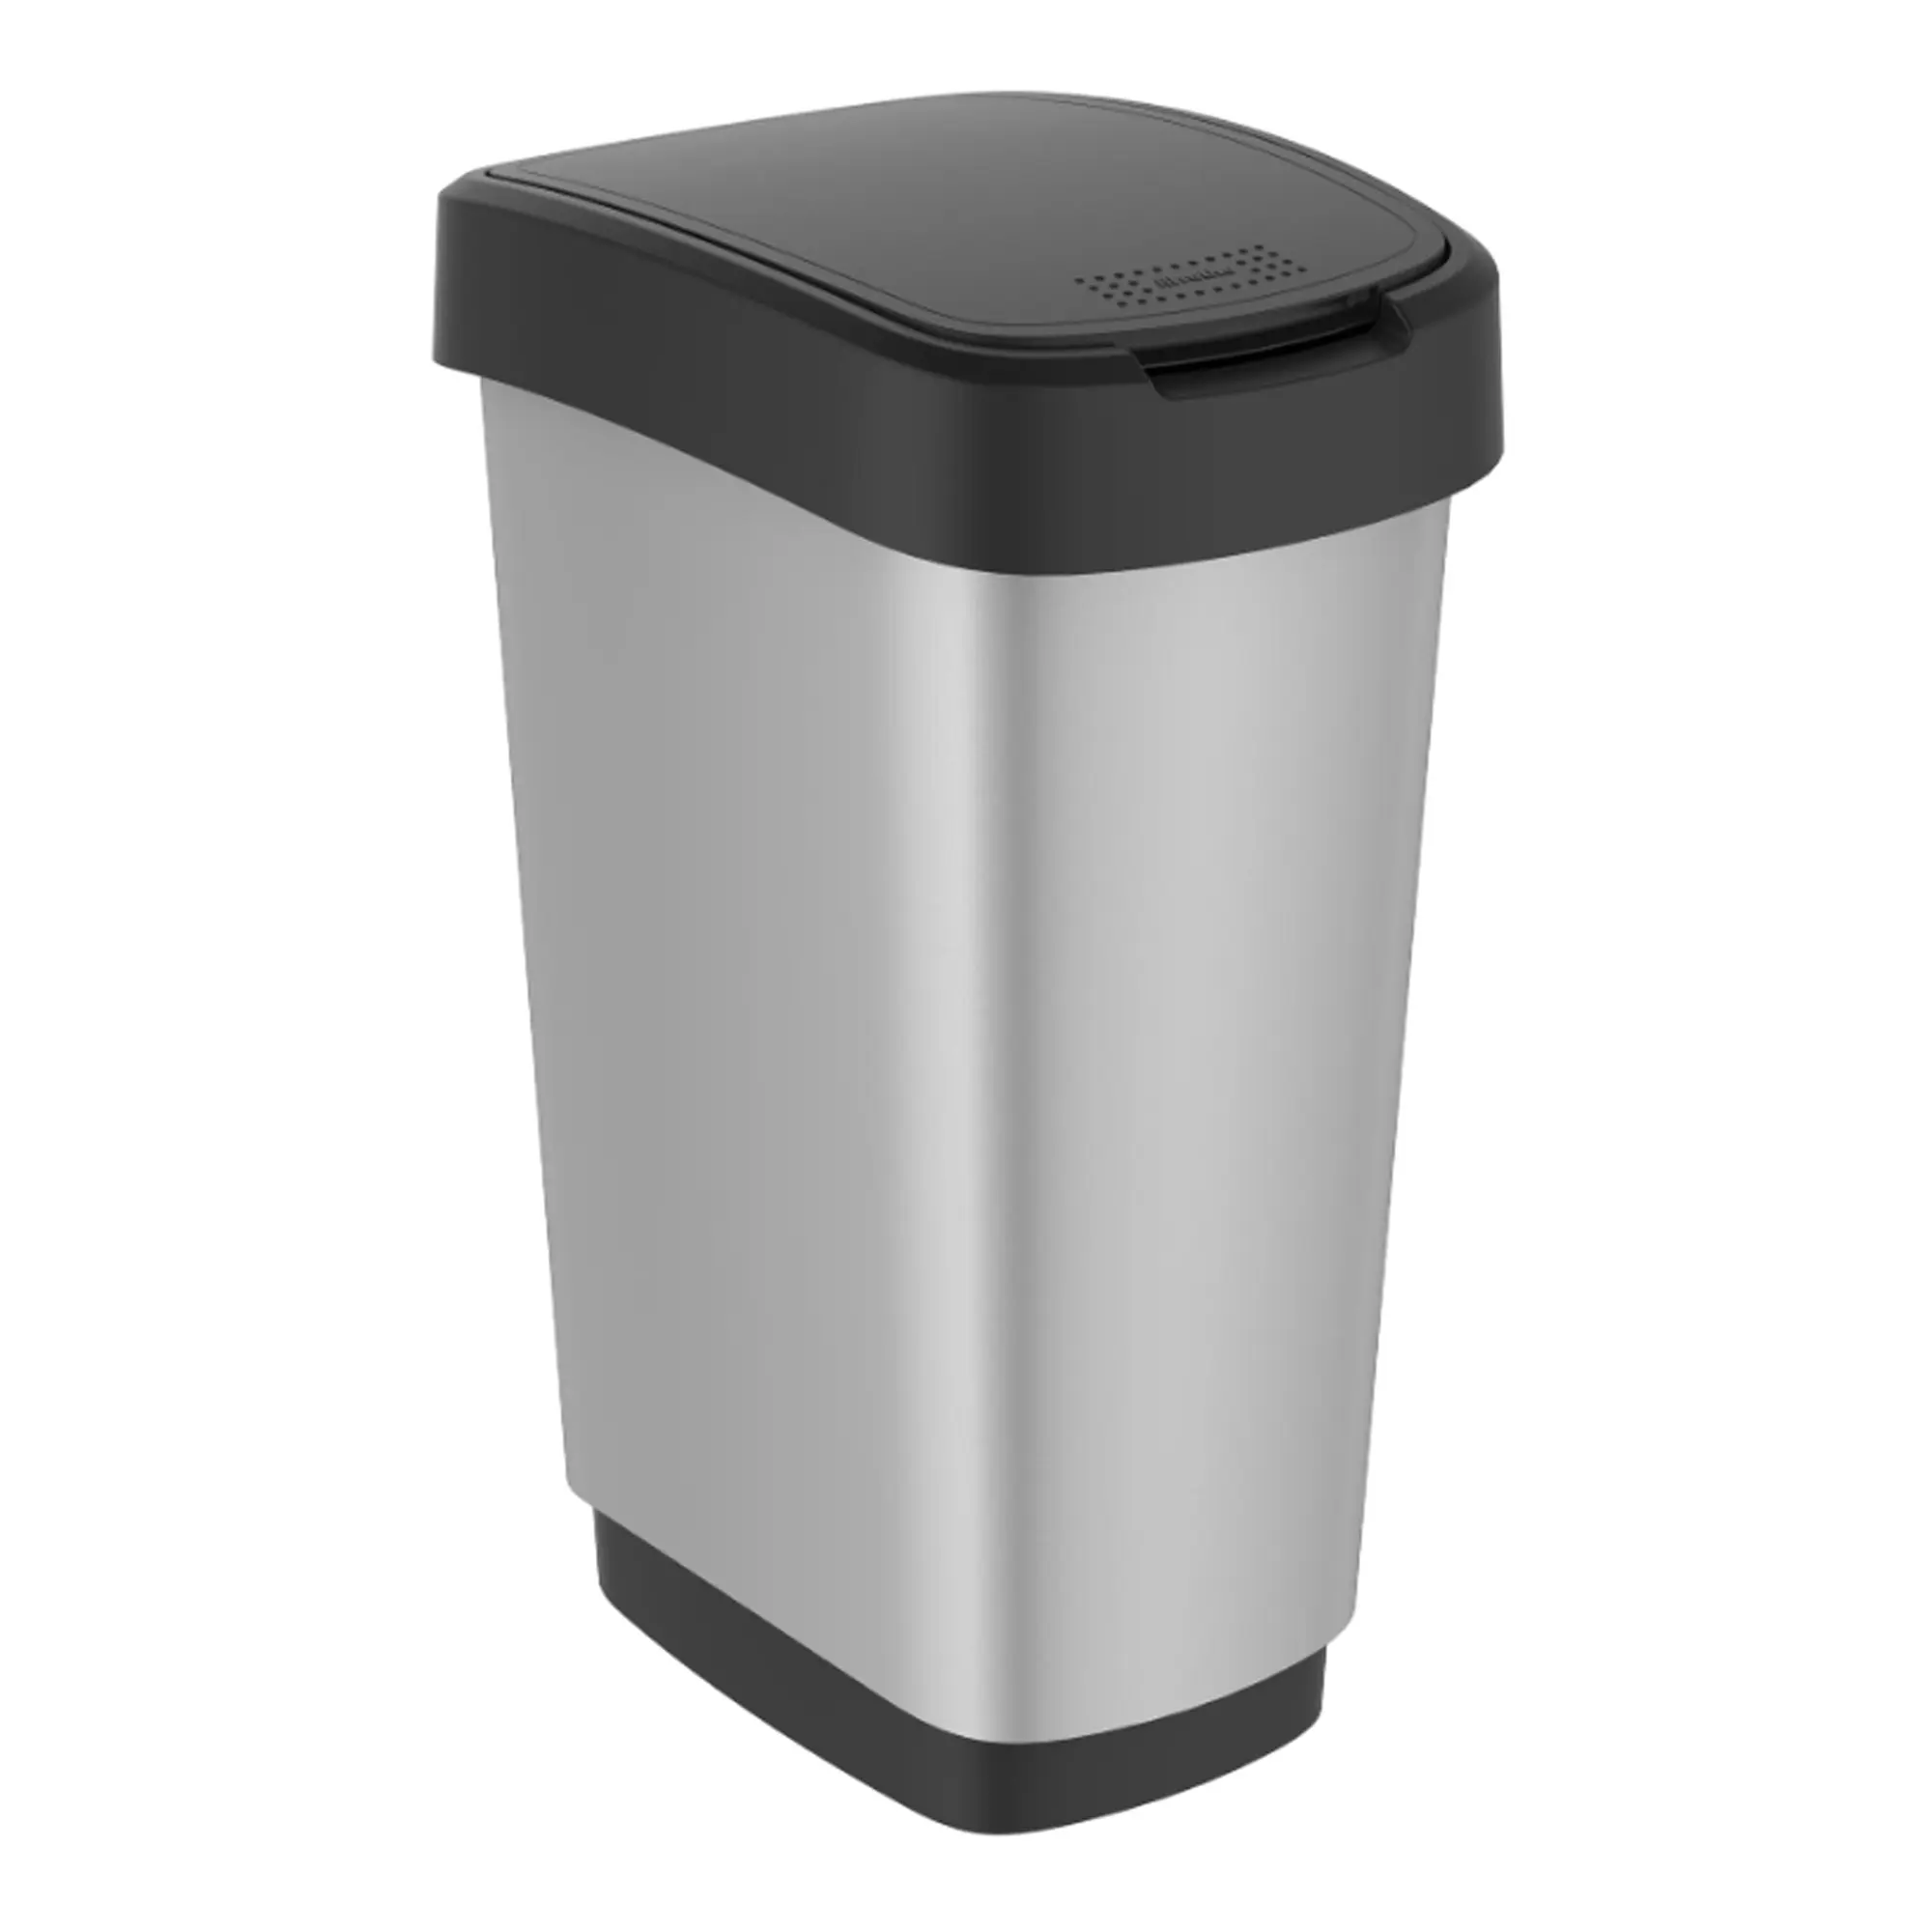 RothoPro Twist Abfallbehälter 25 Liter silber/schwarz 59146502_1